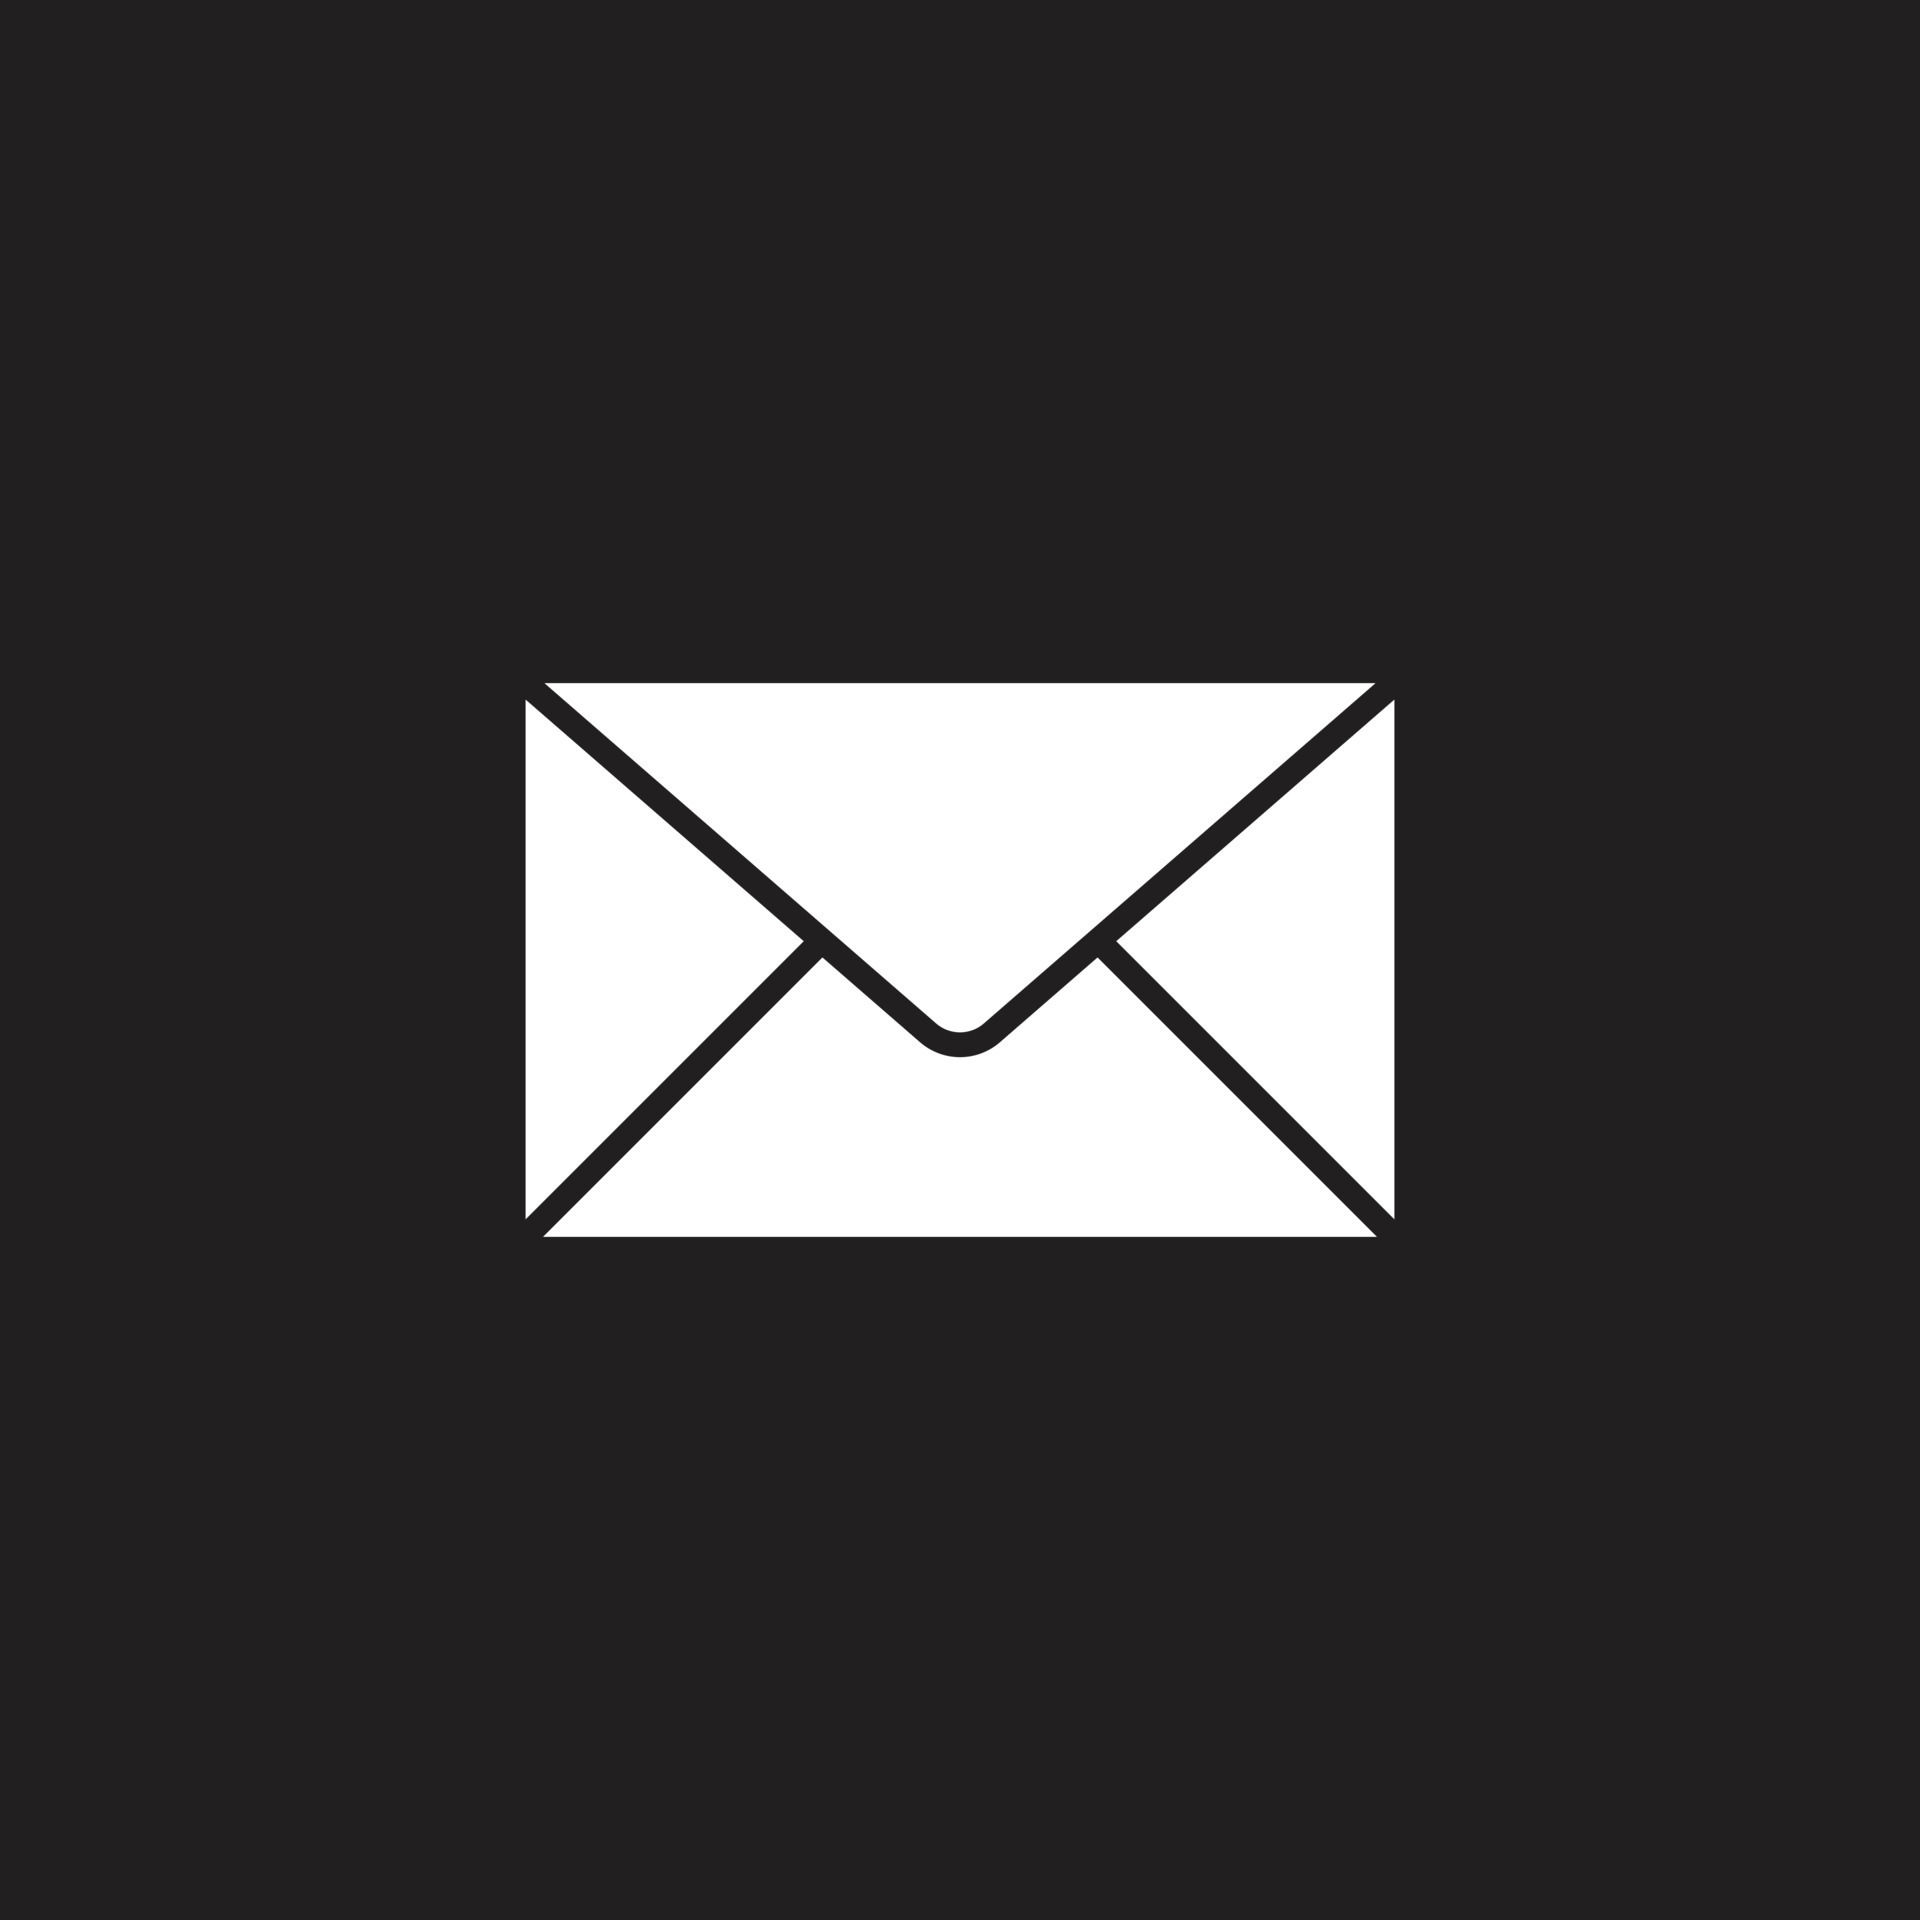 Tại sao không tìm hiểu về biểu tượng email trắng đẹp mắt này? Nó sẽ giúp bạn có một giao diện thư điện tử sáng tạo và dễ nhìn.